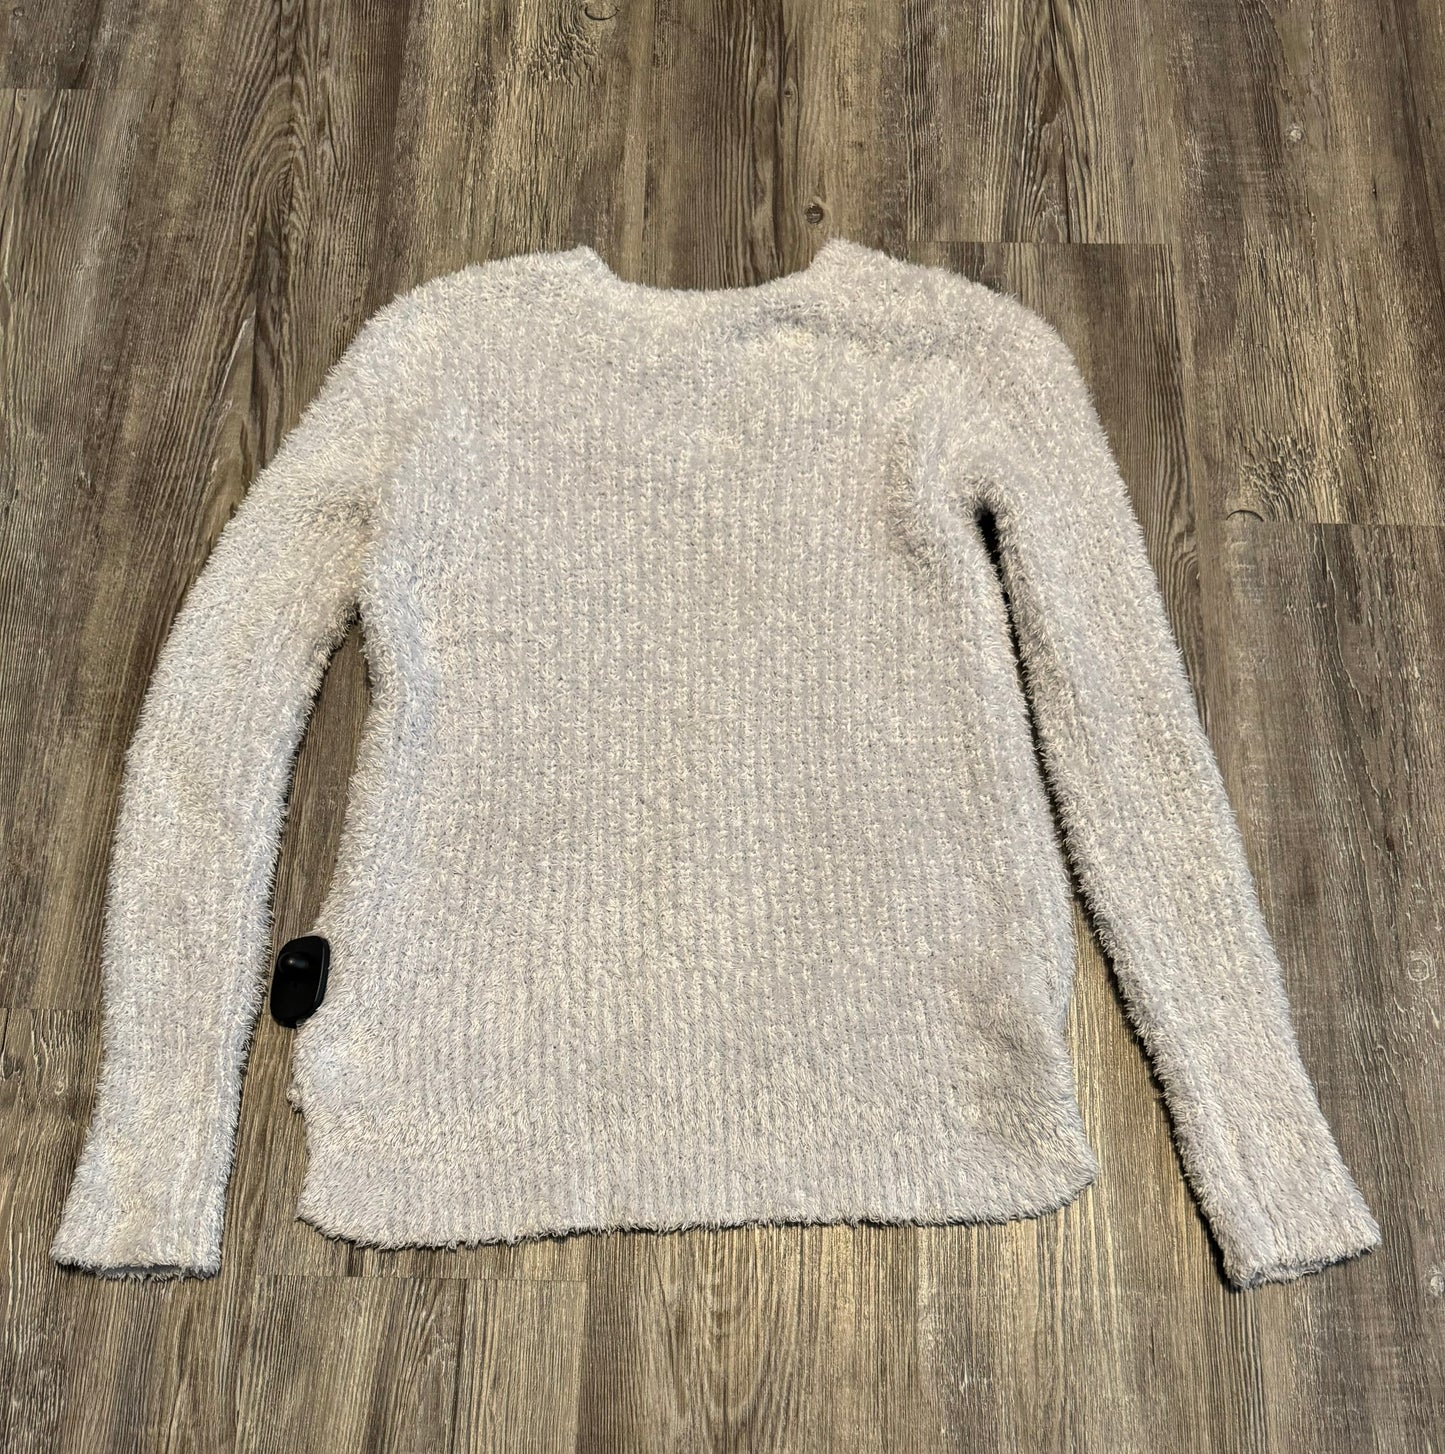 Sweater By Ellen Tracy  Size: Xs